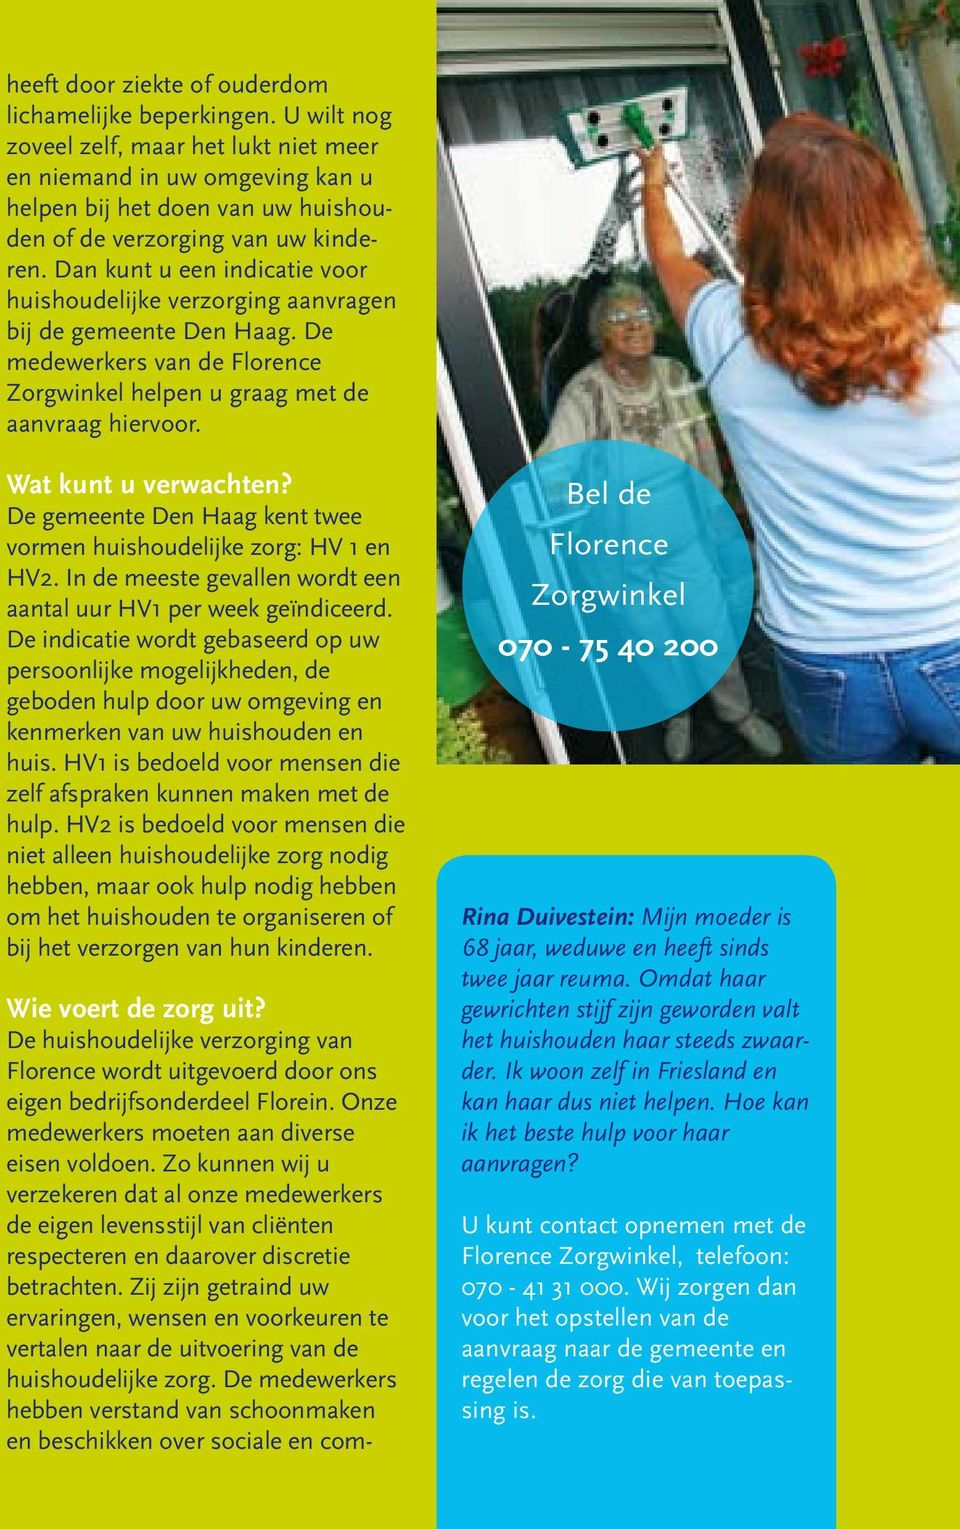 Dan kunt u een indicatie voor huishoudelijke verzorging aanvragen bij de gemeente Den Haag. De medewerkers van de Florence Zorgwinkel helpen u graag met de aanvraag hiervoor. Wat kunt u verwachten?